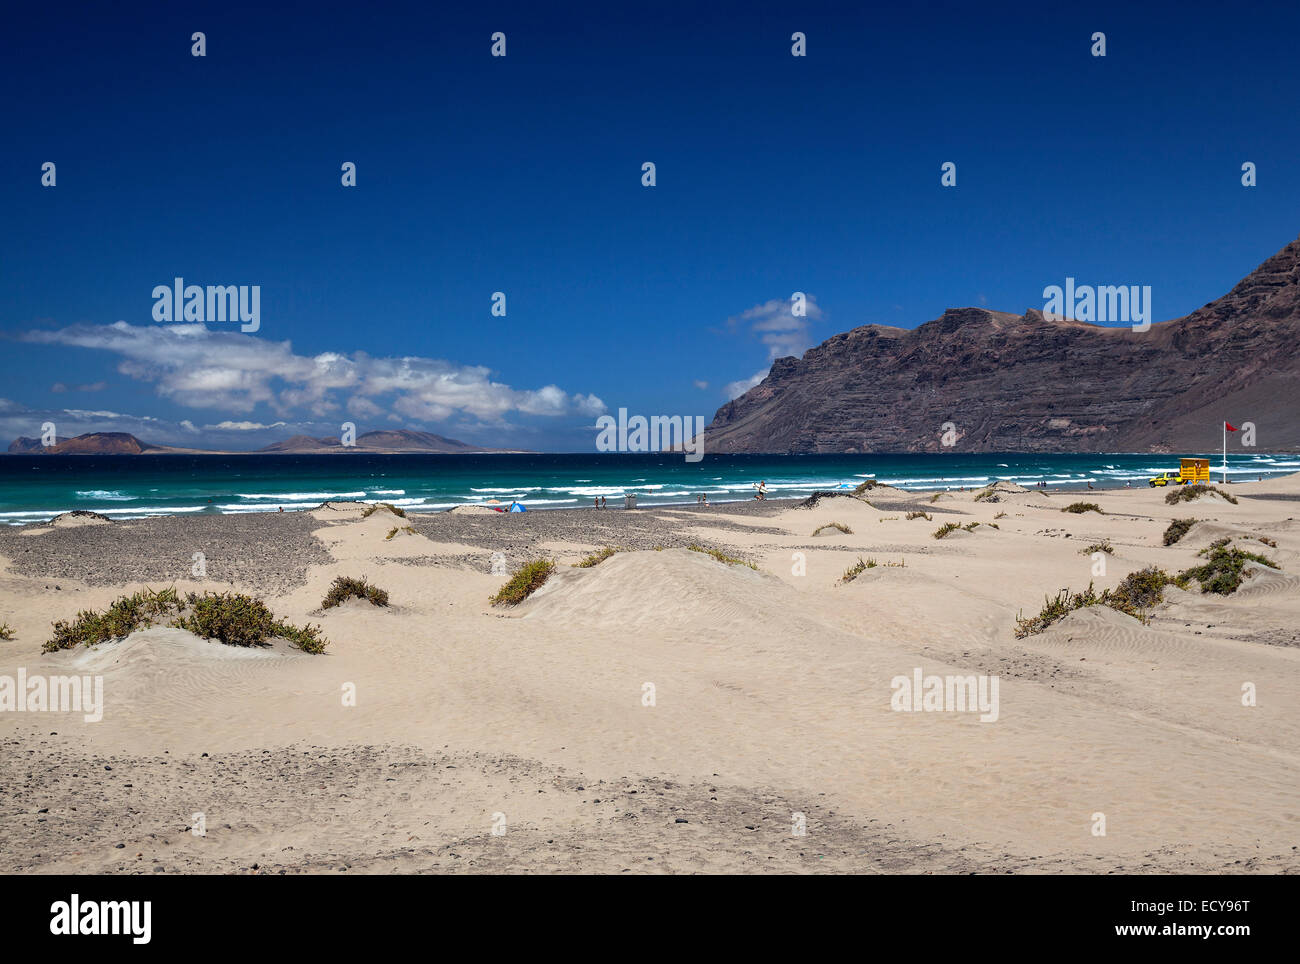 La plage de Famara, Playa de Famara, droit Risco de Famara, arrière gauche de l'île de Graciosa, Lanzarote, îles Canaries, Espagne Banque D'Images